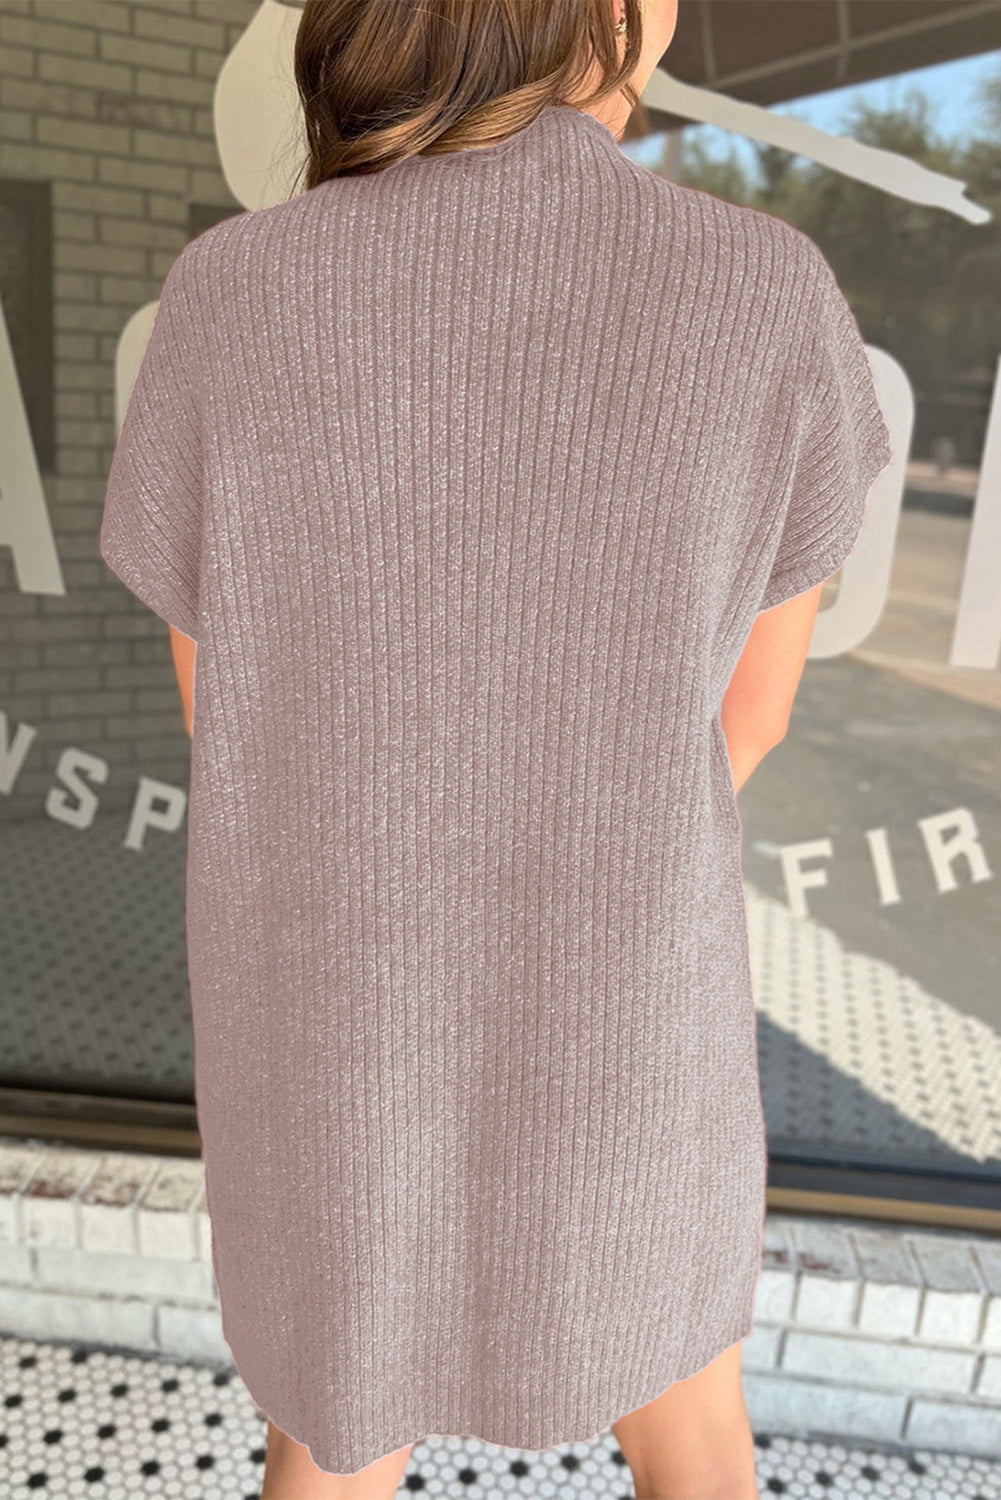 Simply Taupefarbenes Pulloverkleid aus geripptem Strick mit aufgesetzten Taschen und kurzen Ärmeln